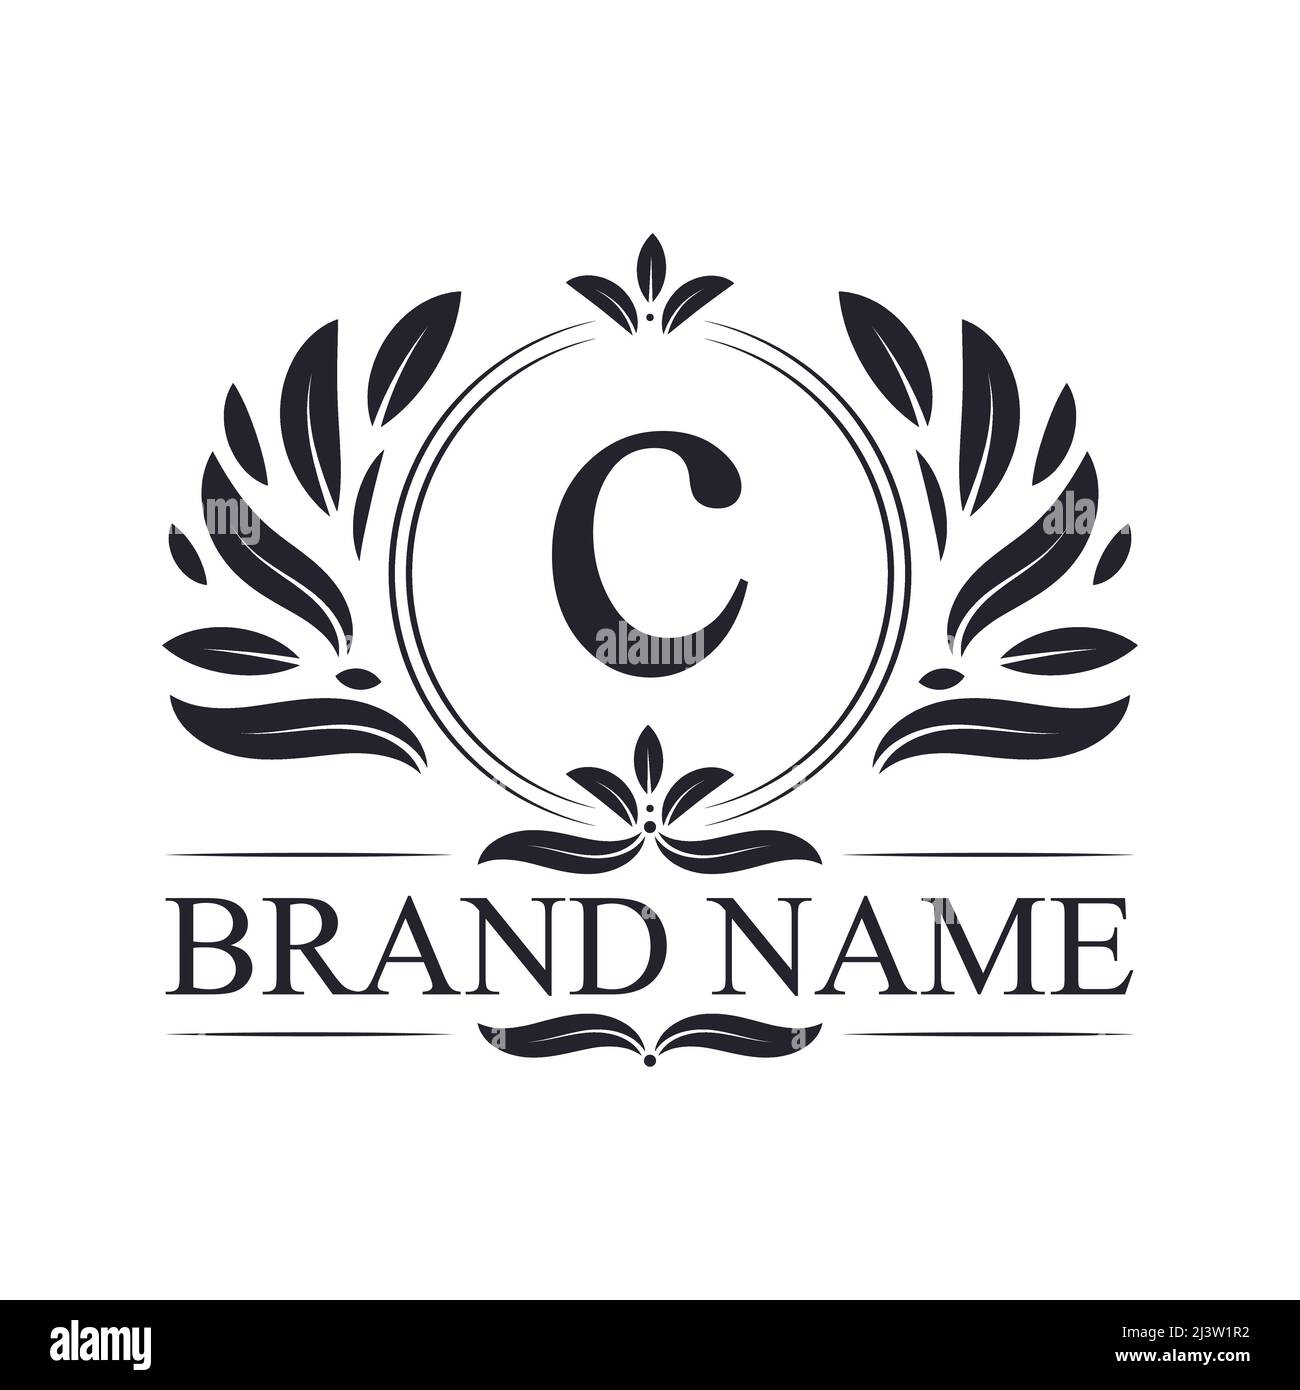 Diseño de logotipo con letra C del alfabeto ornamental dorado. Lujosa plantilla con el logotipo de la elegante letra C dorada. Ilustración del Vector